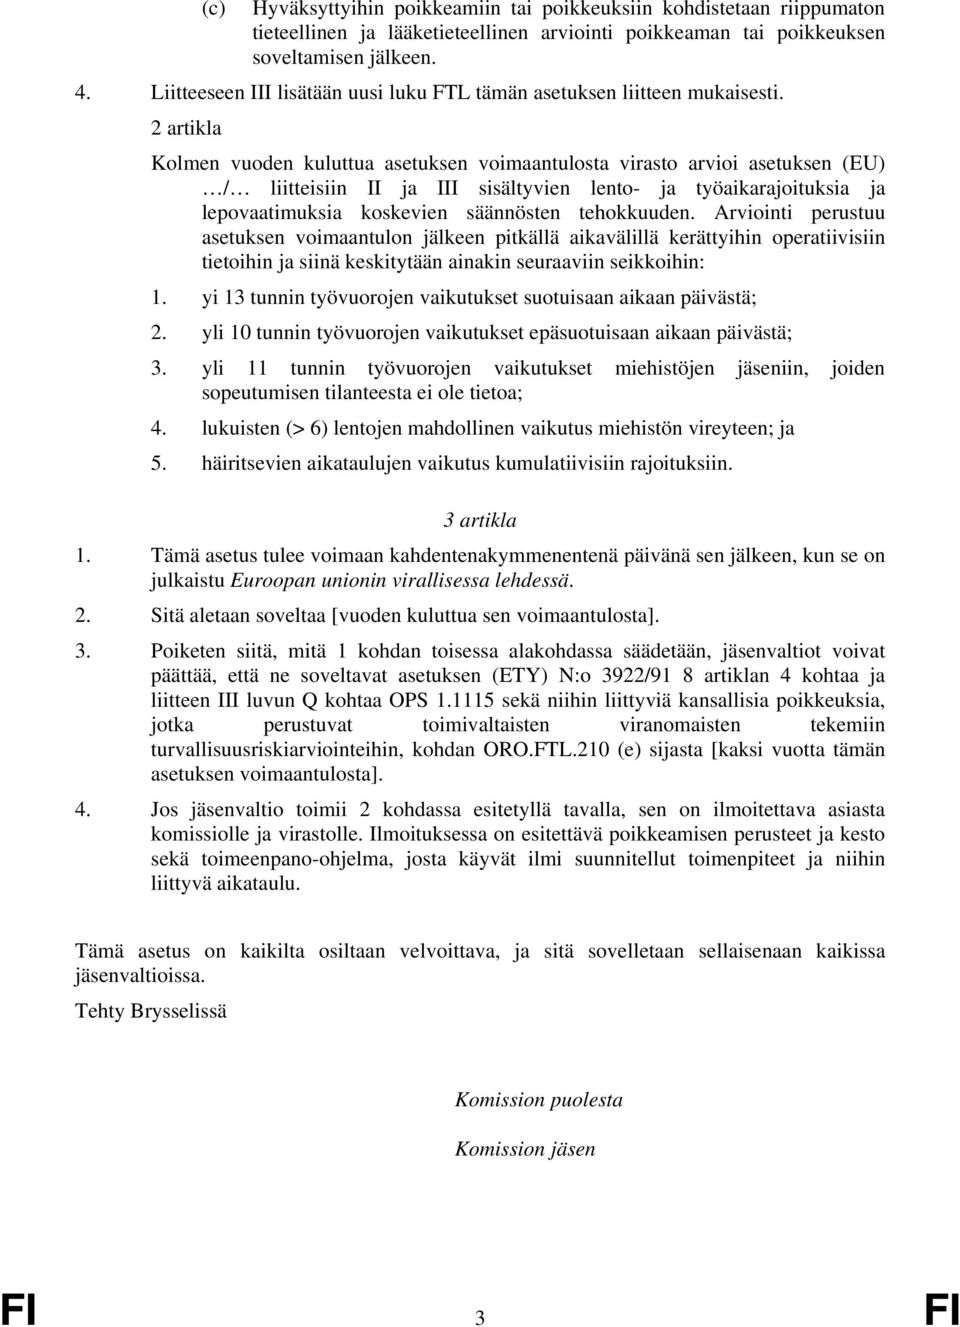 2 artikla Kolmen vuoden kuluttua asetuksen voimaantulosta virasto arvioi asetuksen (EU) / liitteisiin II ja III sisältyvien lento- ja työaikarajoituksia ja lepovaatimuksia koskevien säännösten